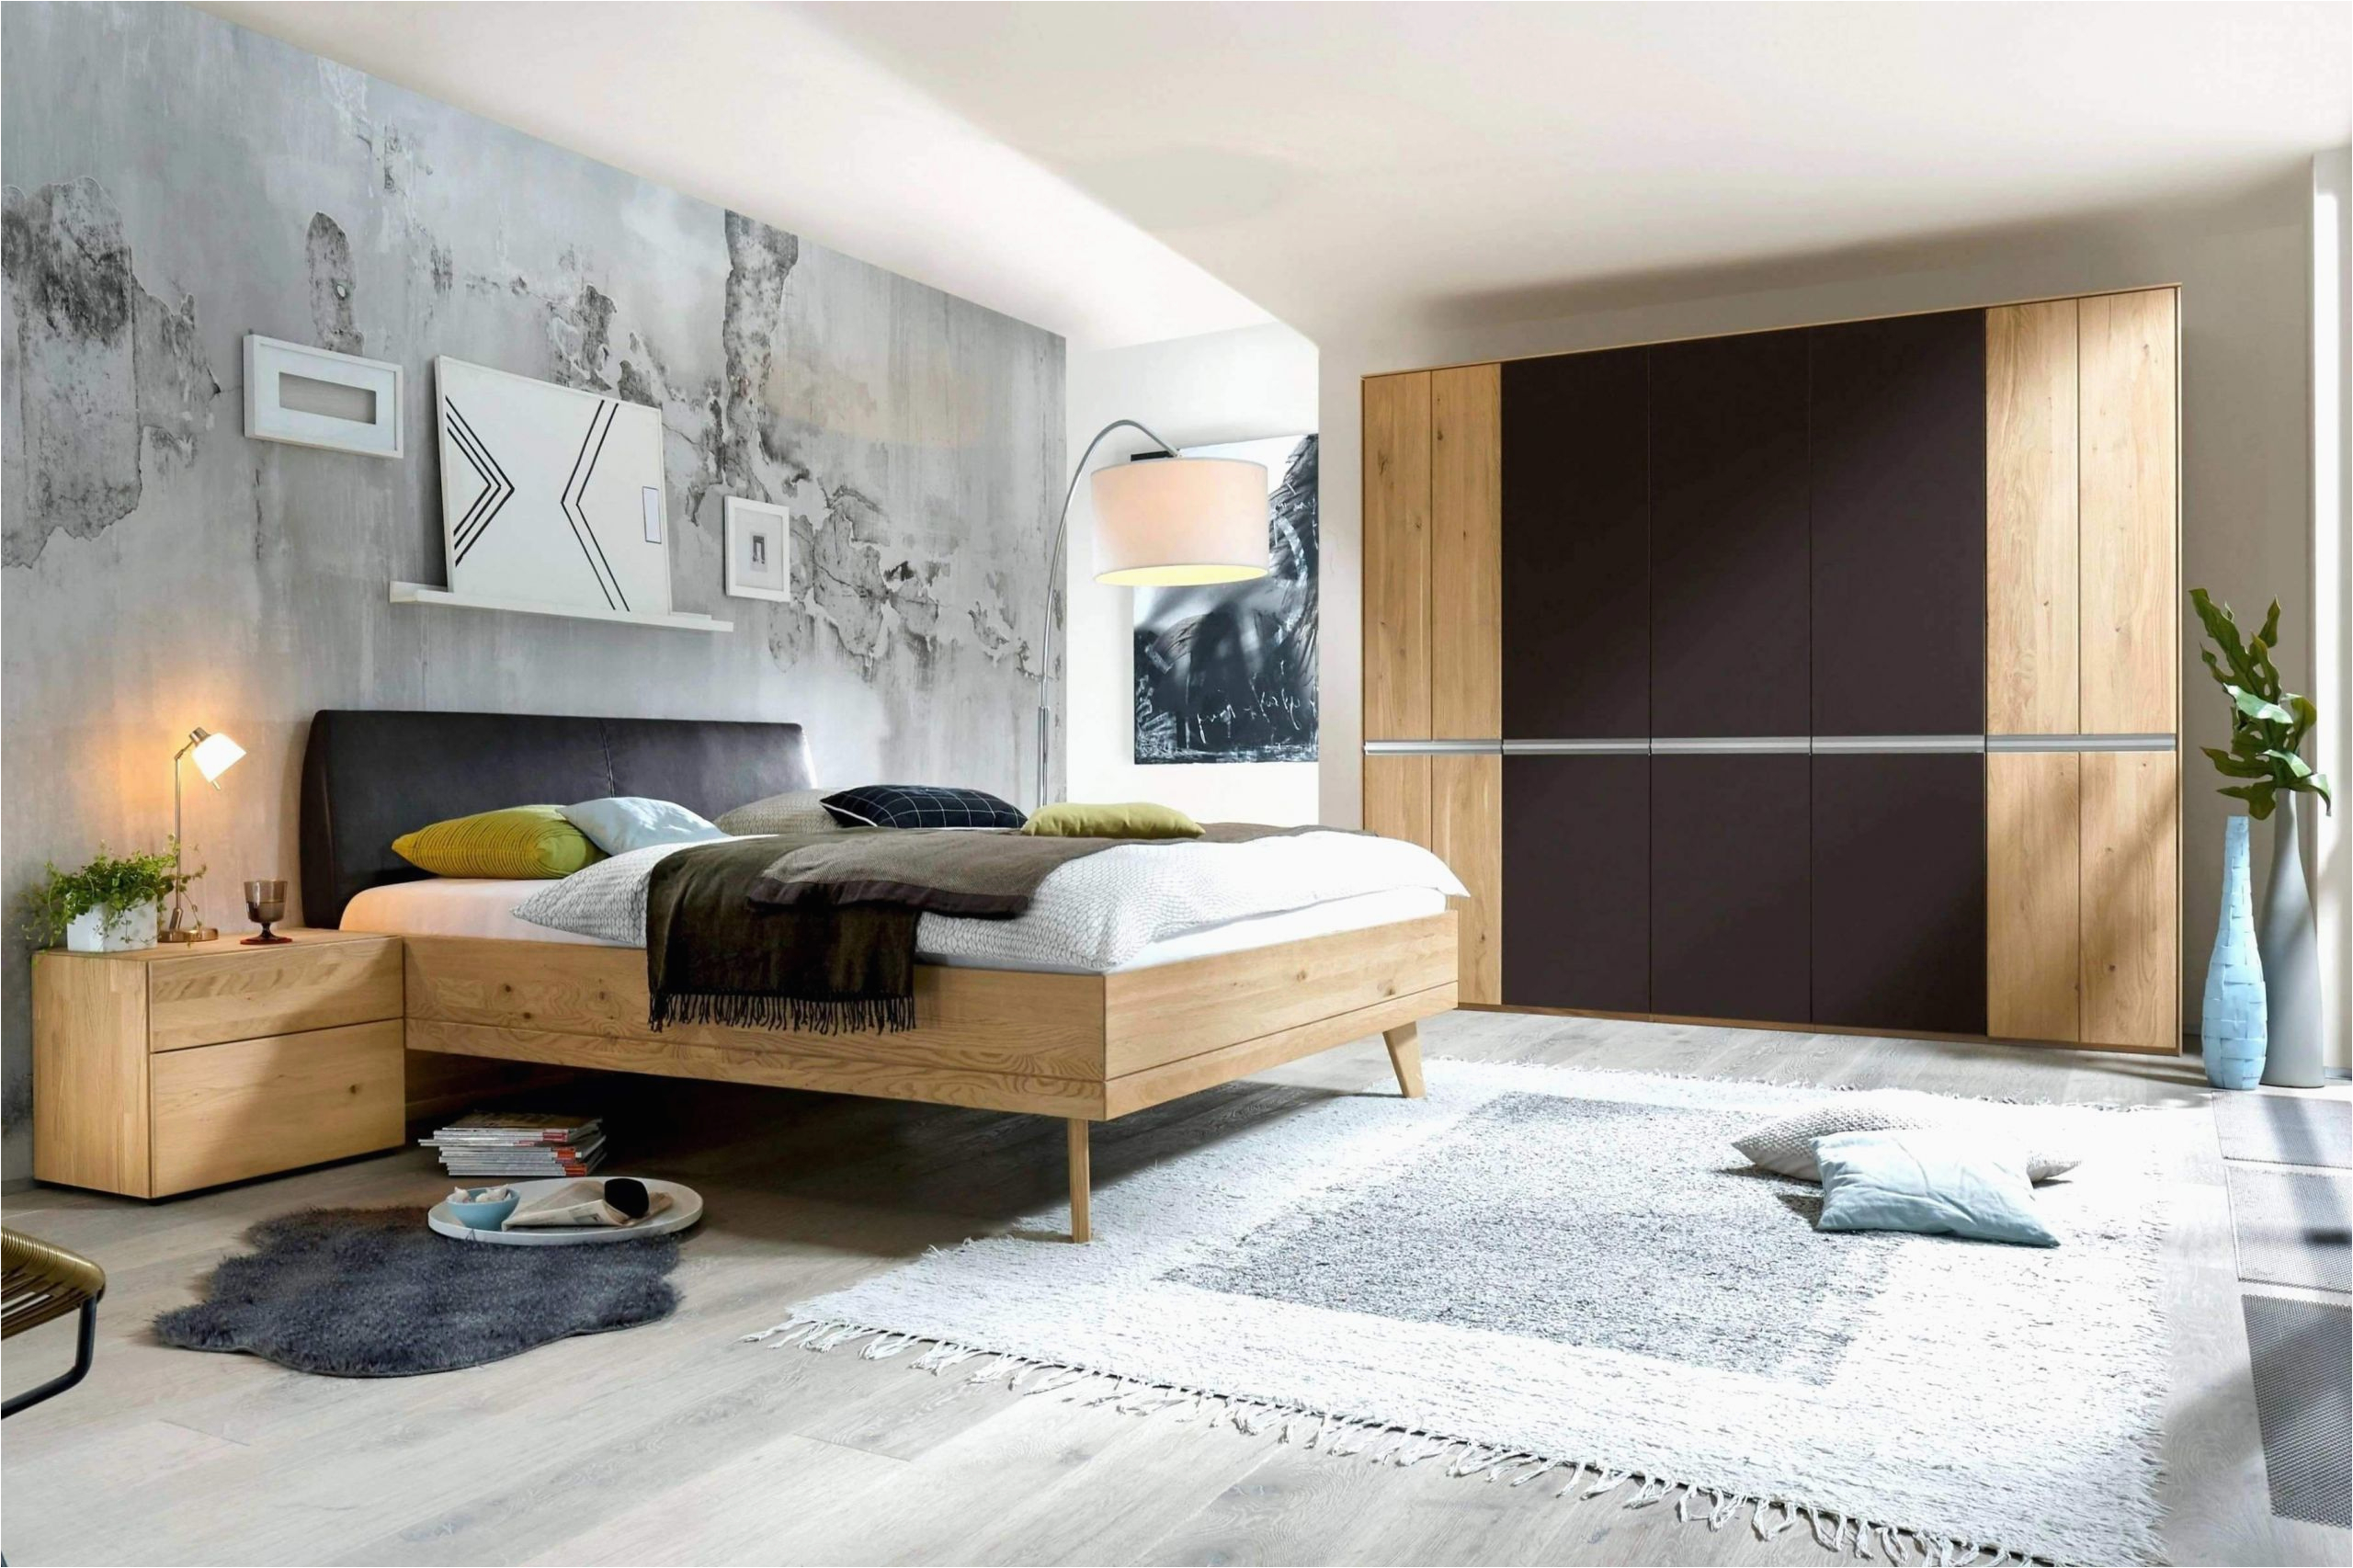 grau weis wohnzimmer luxus 45 einzigartig von wohnzimmer modern schwarz weis konzept of grau weis wohnzimmer scaled